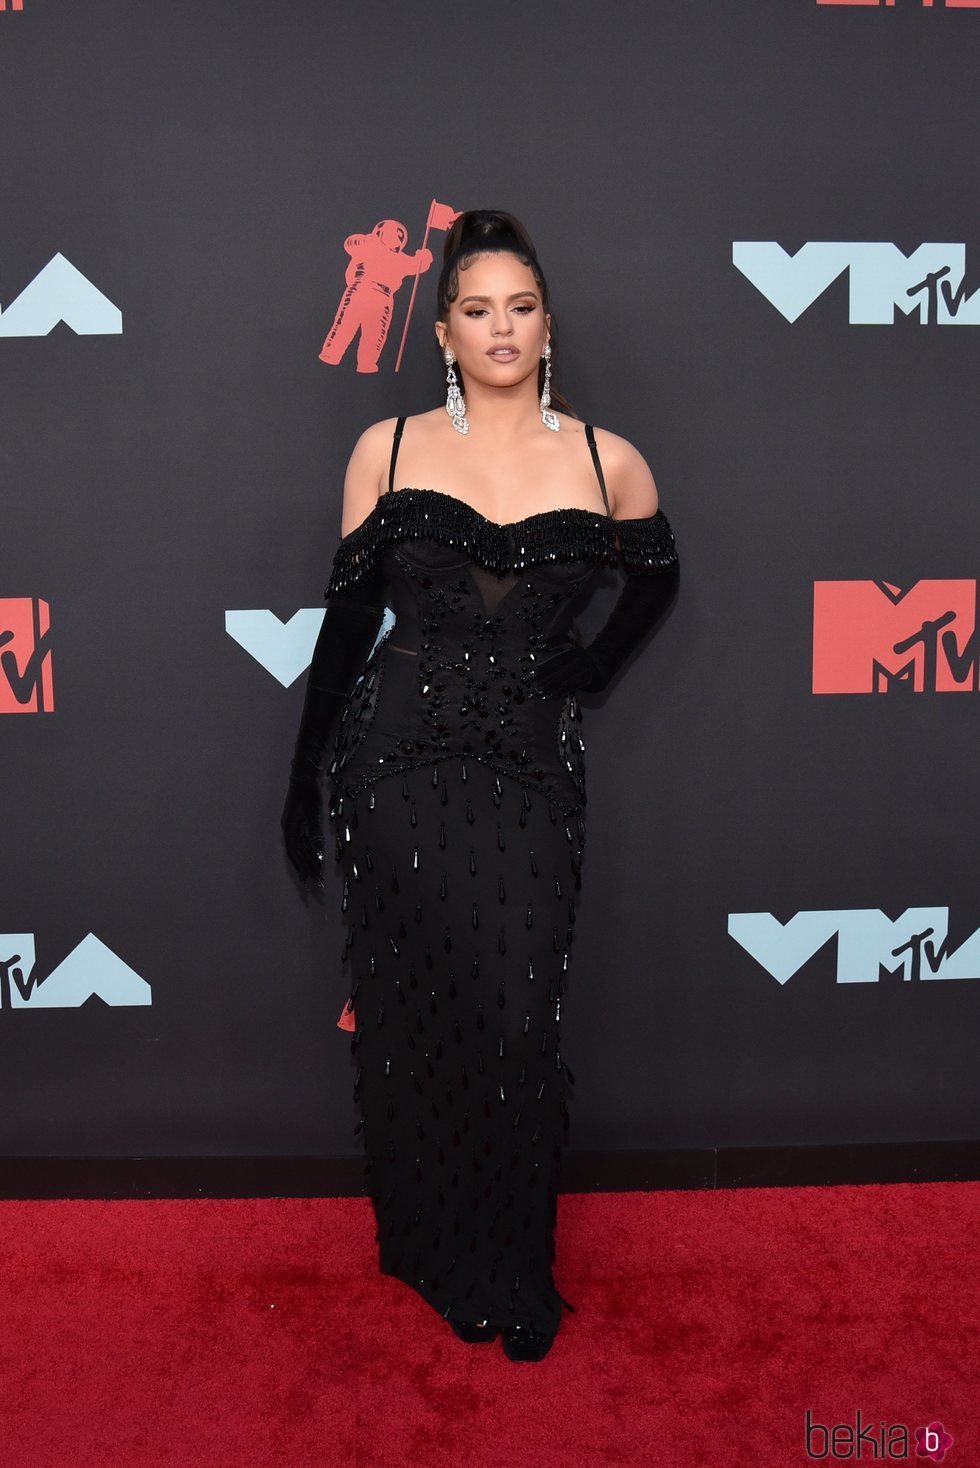 Rosalía y el efecto 'no make up' en los Premios MTV VMAs 2019